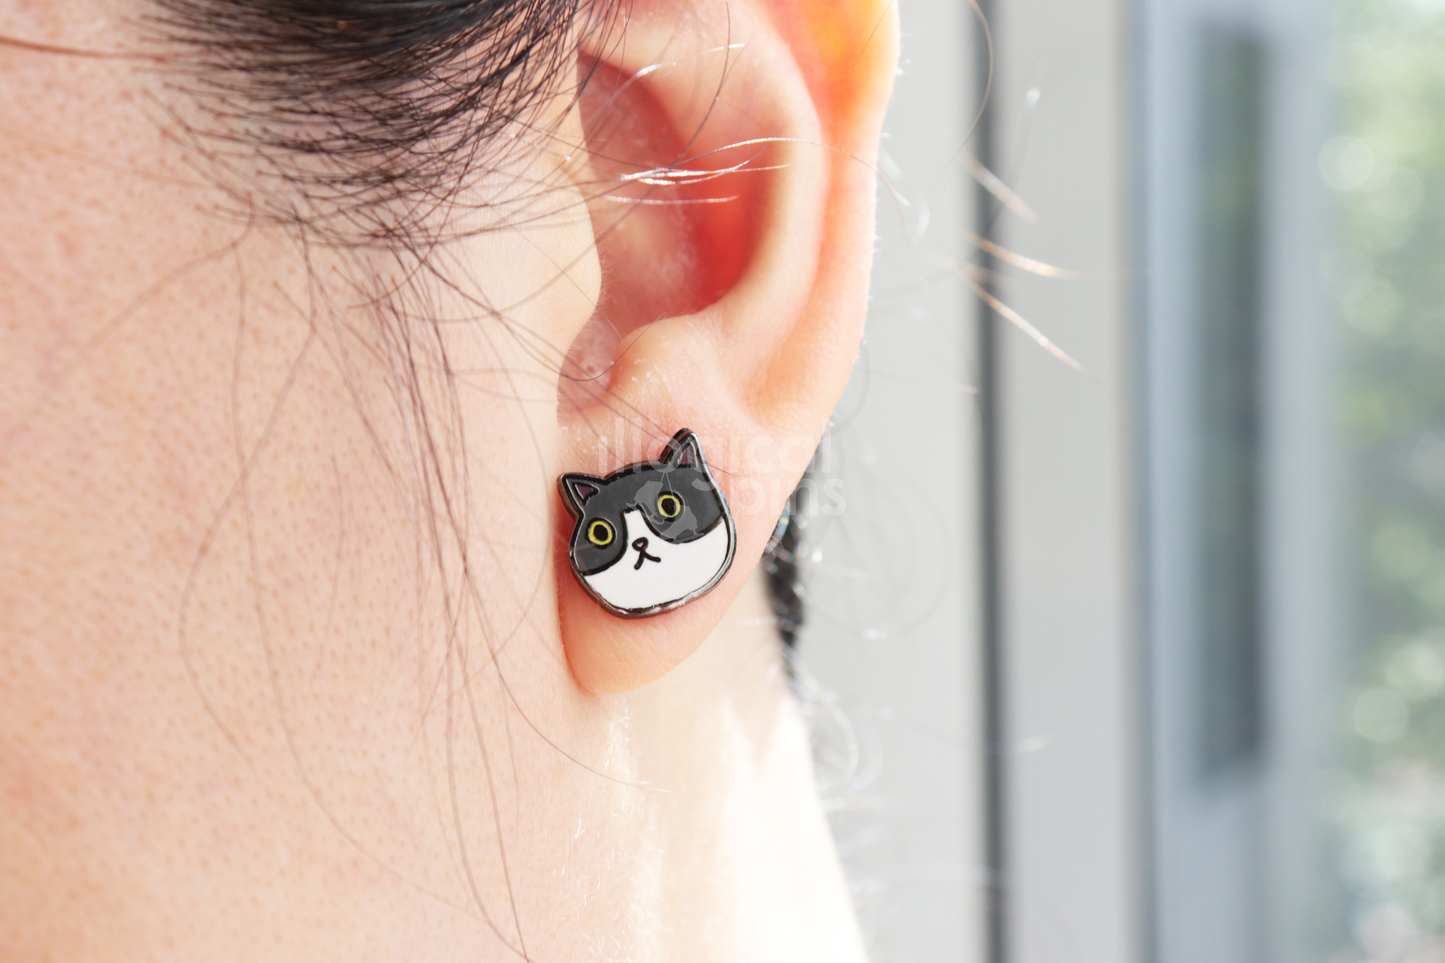 Shocked Cat Earrings